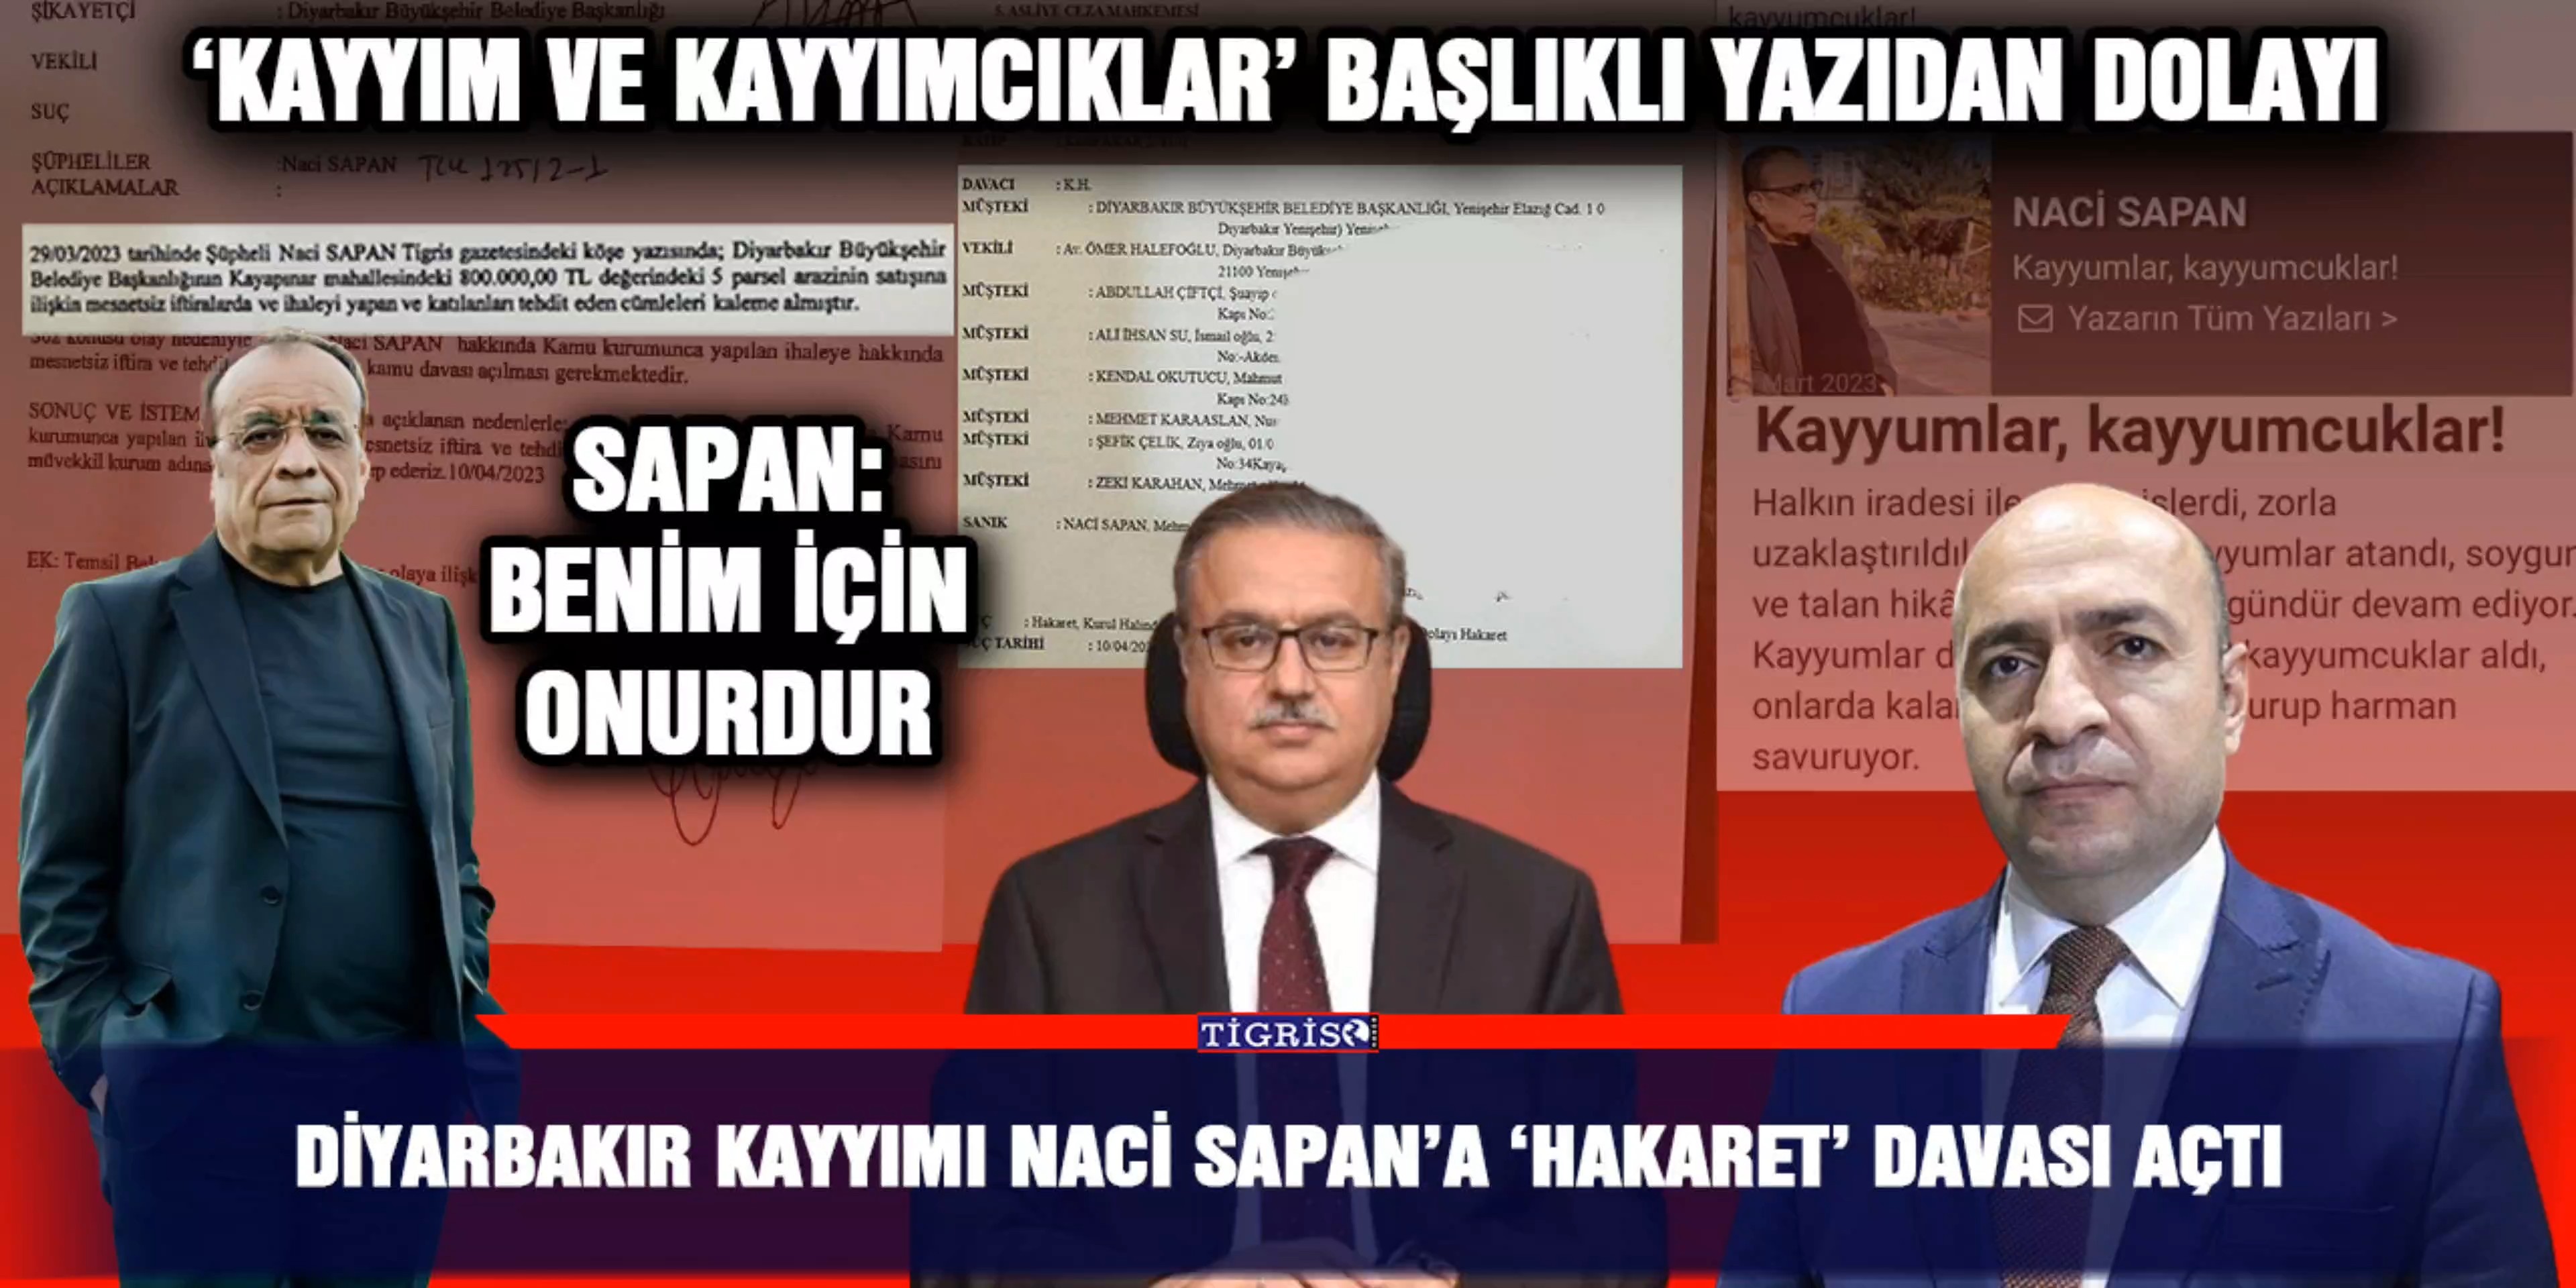 Diyarbakır kayyımı Naci Sapan'a 'hakaret' davası açtı